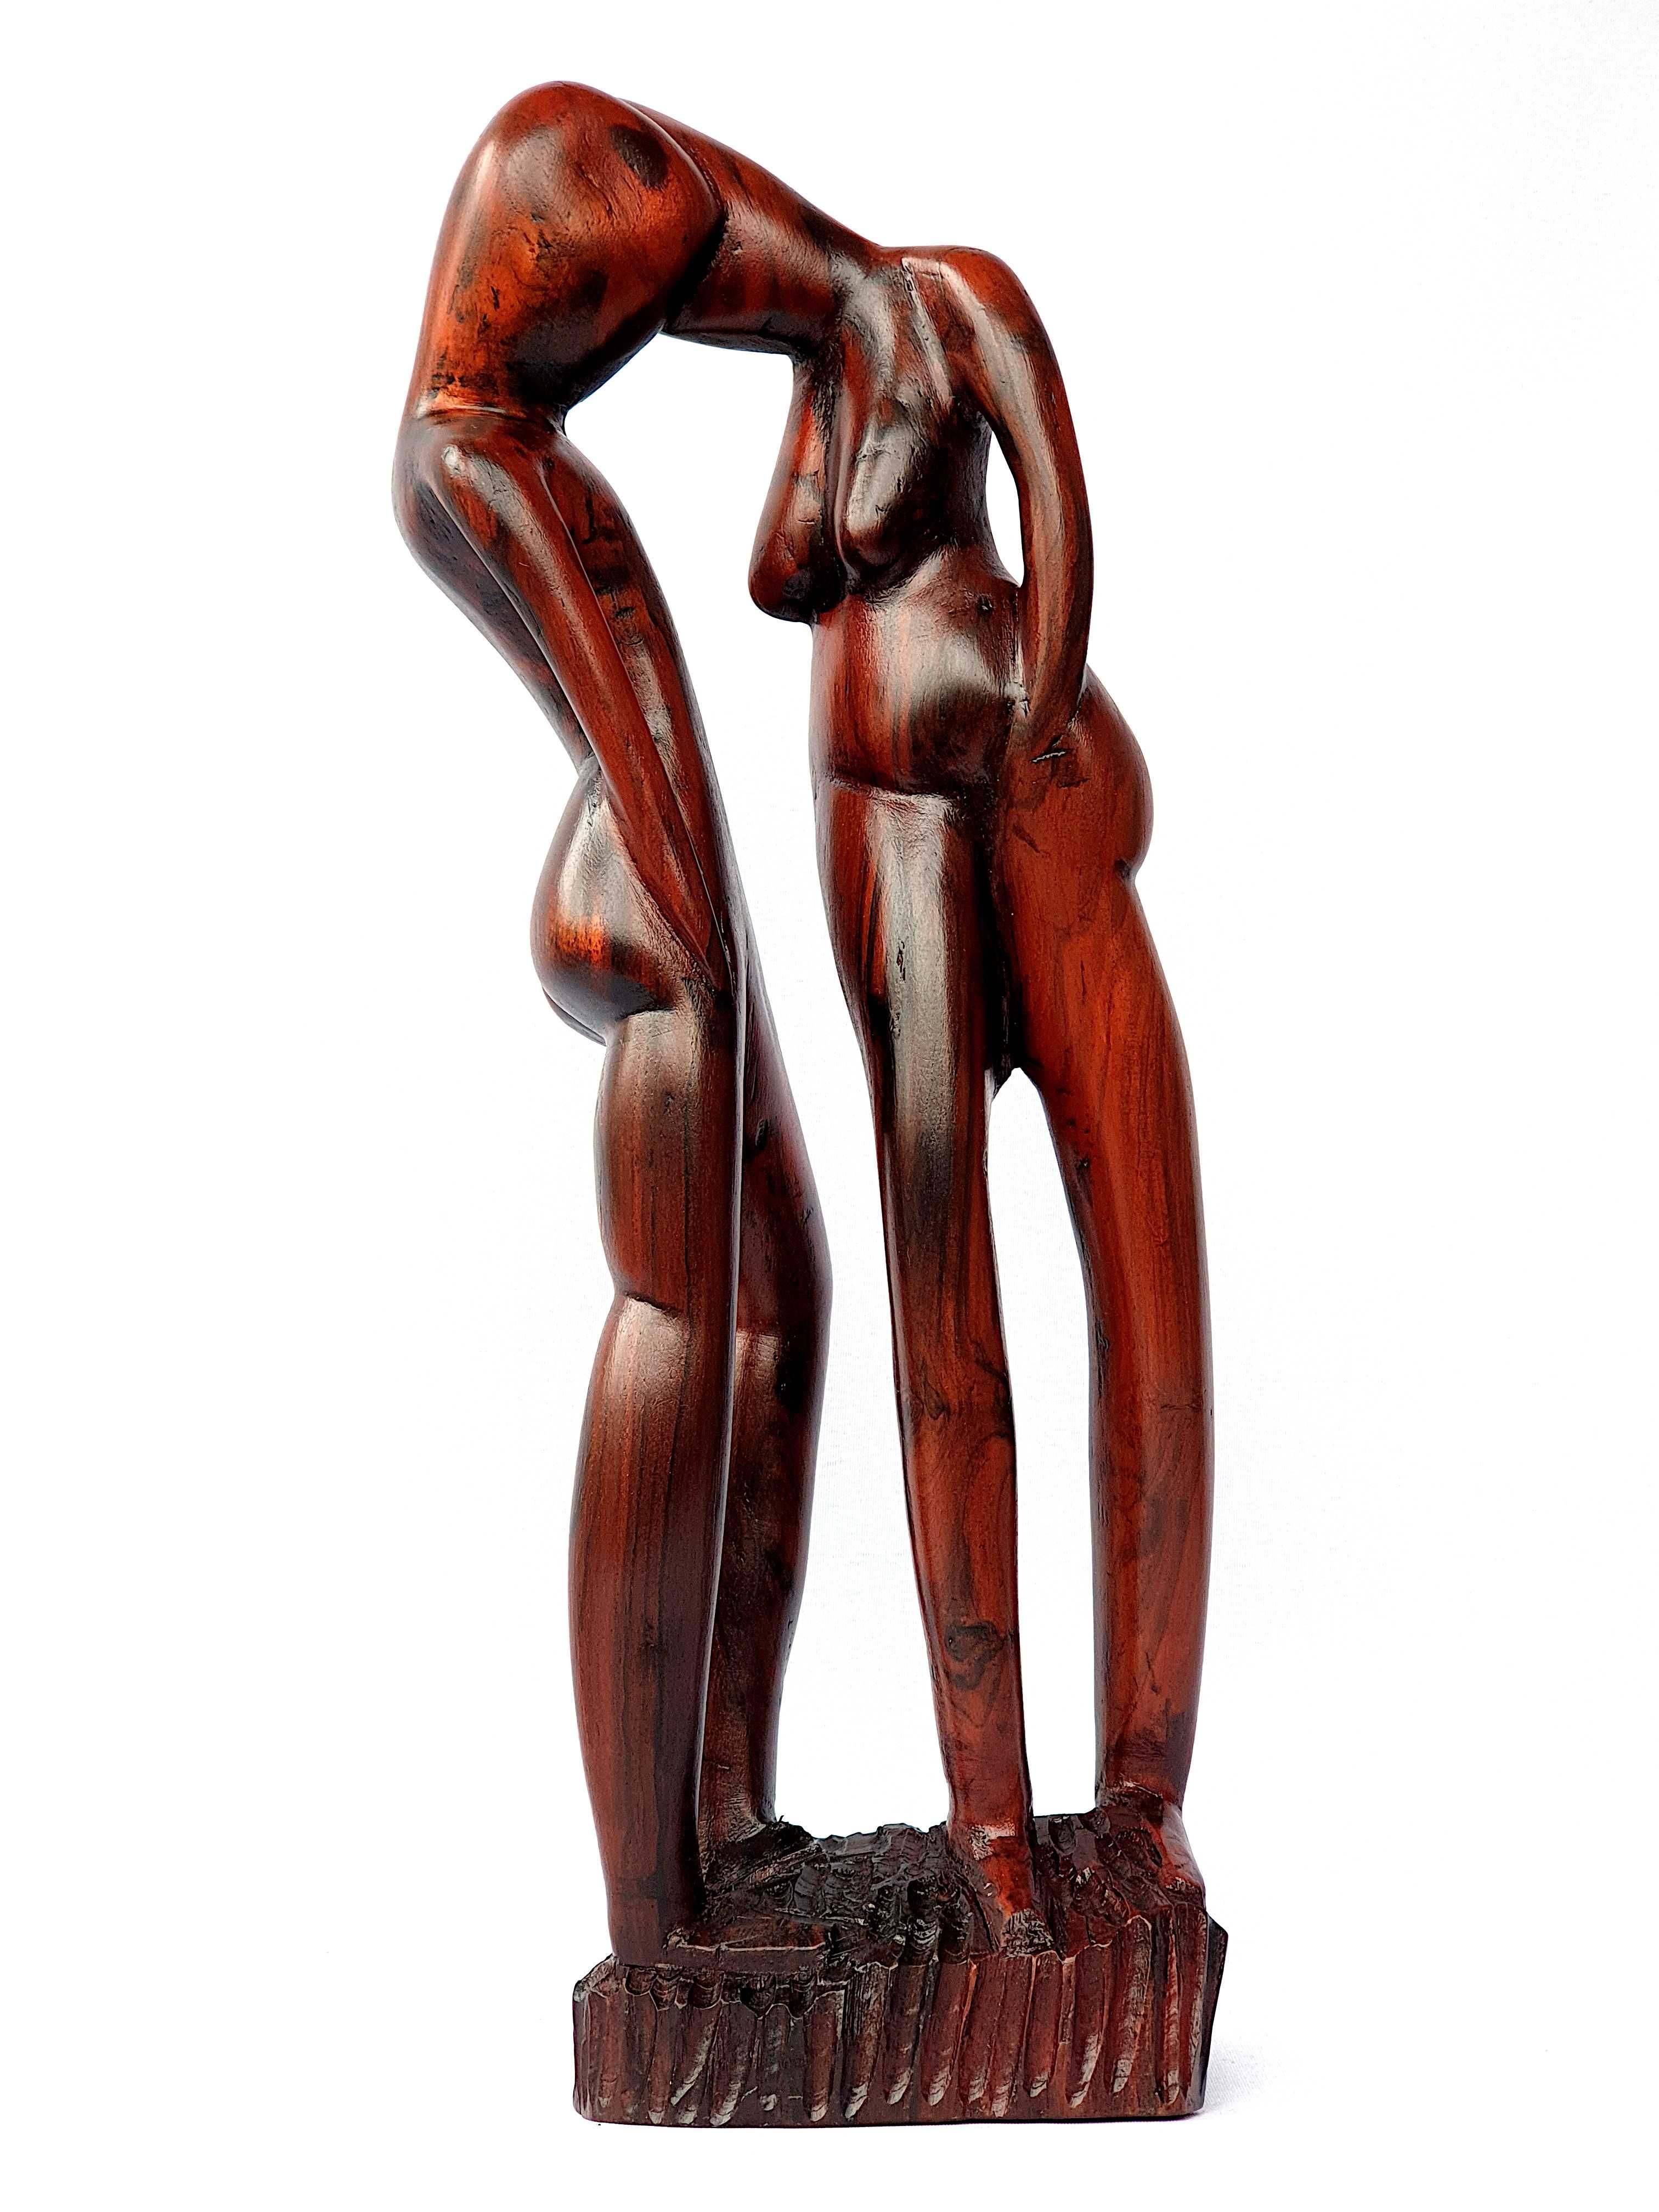 Estátua em madeira exotica arte africana figura decorativa (novo)